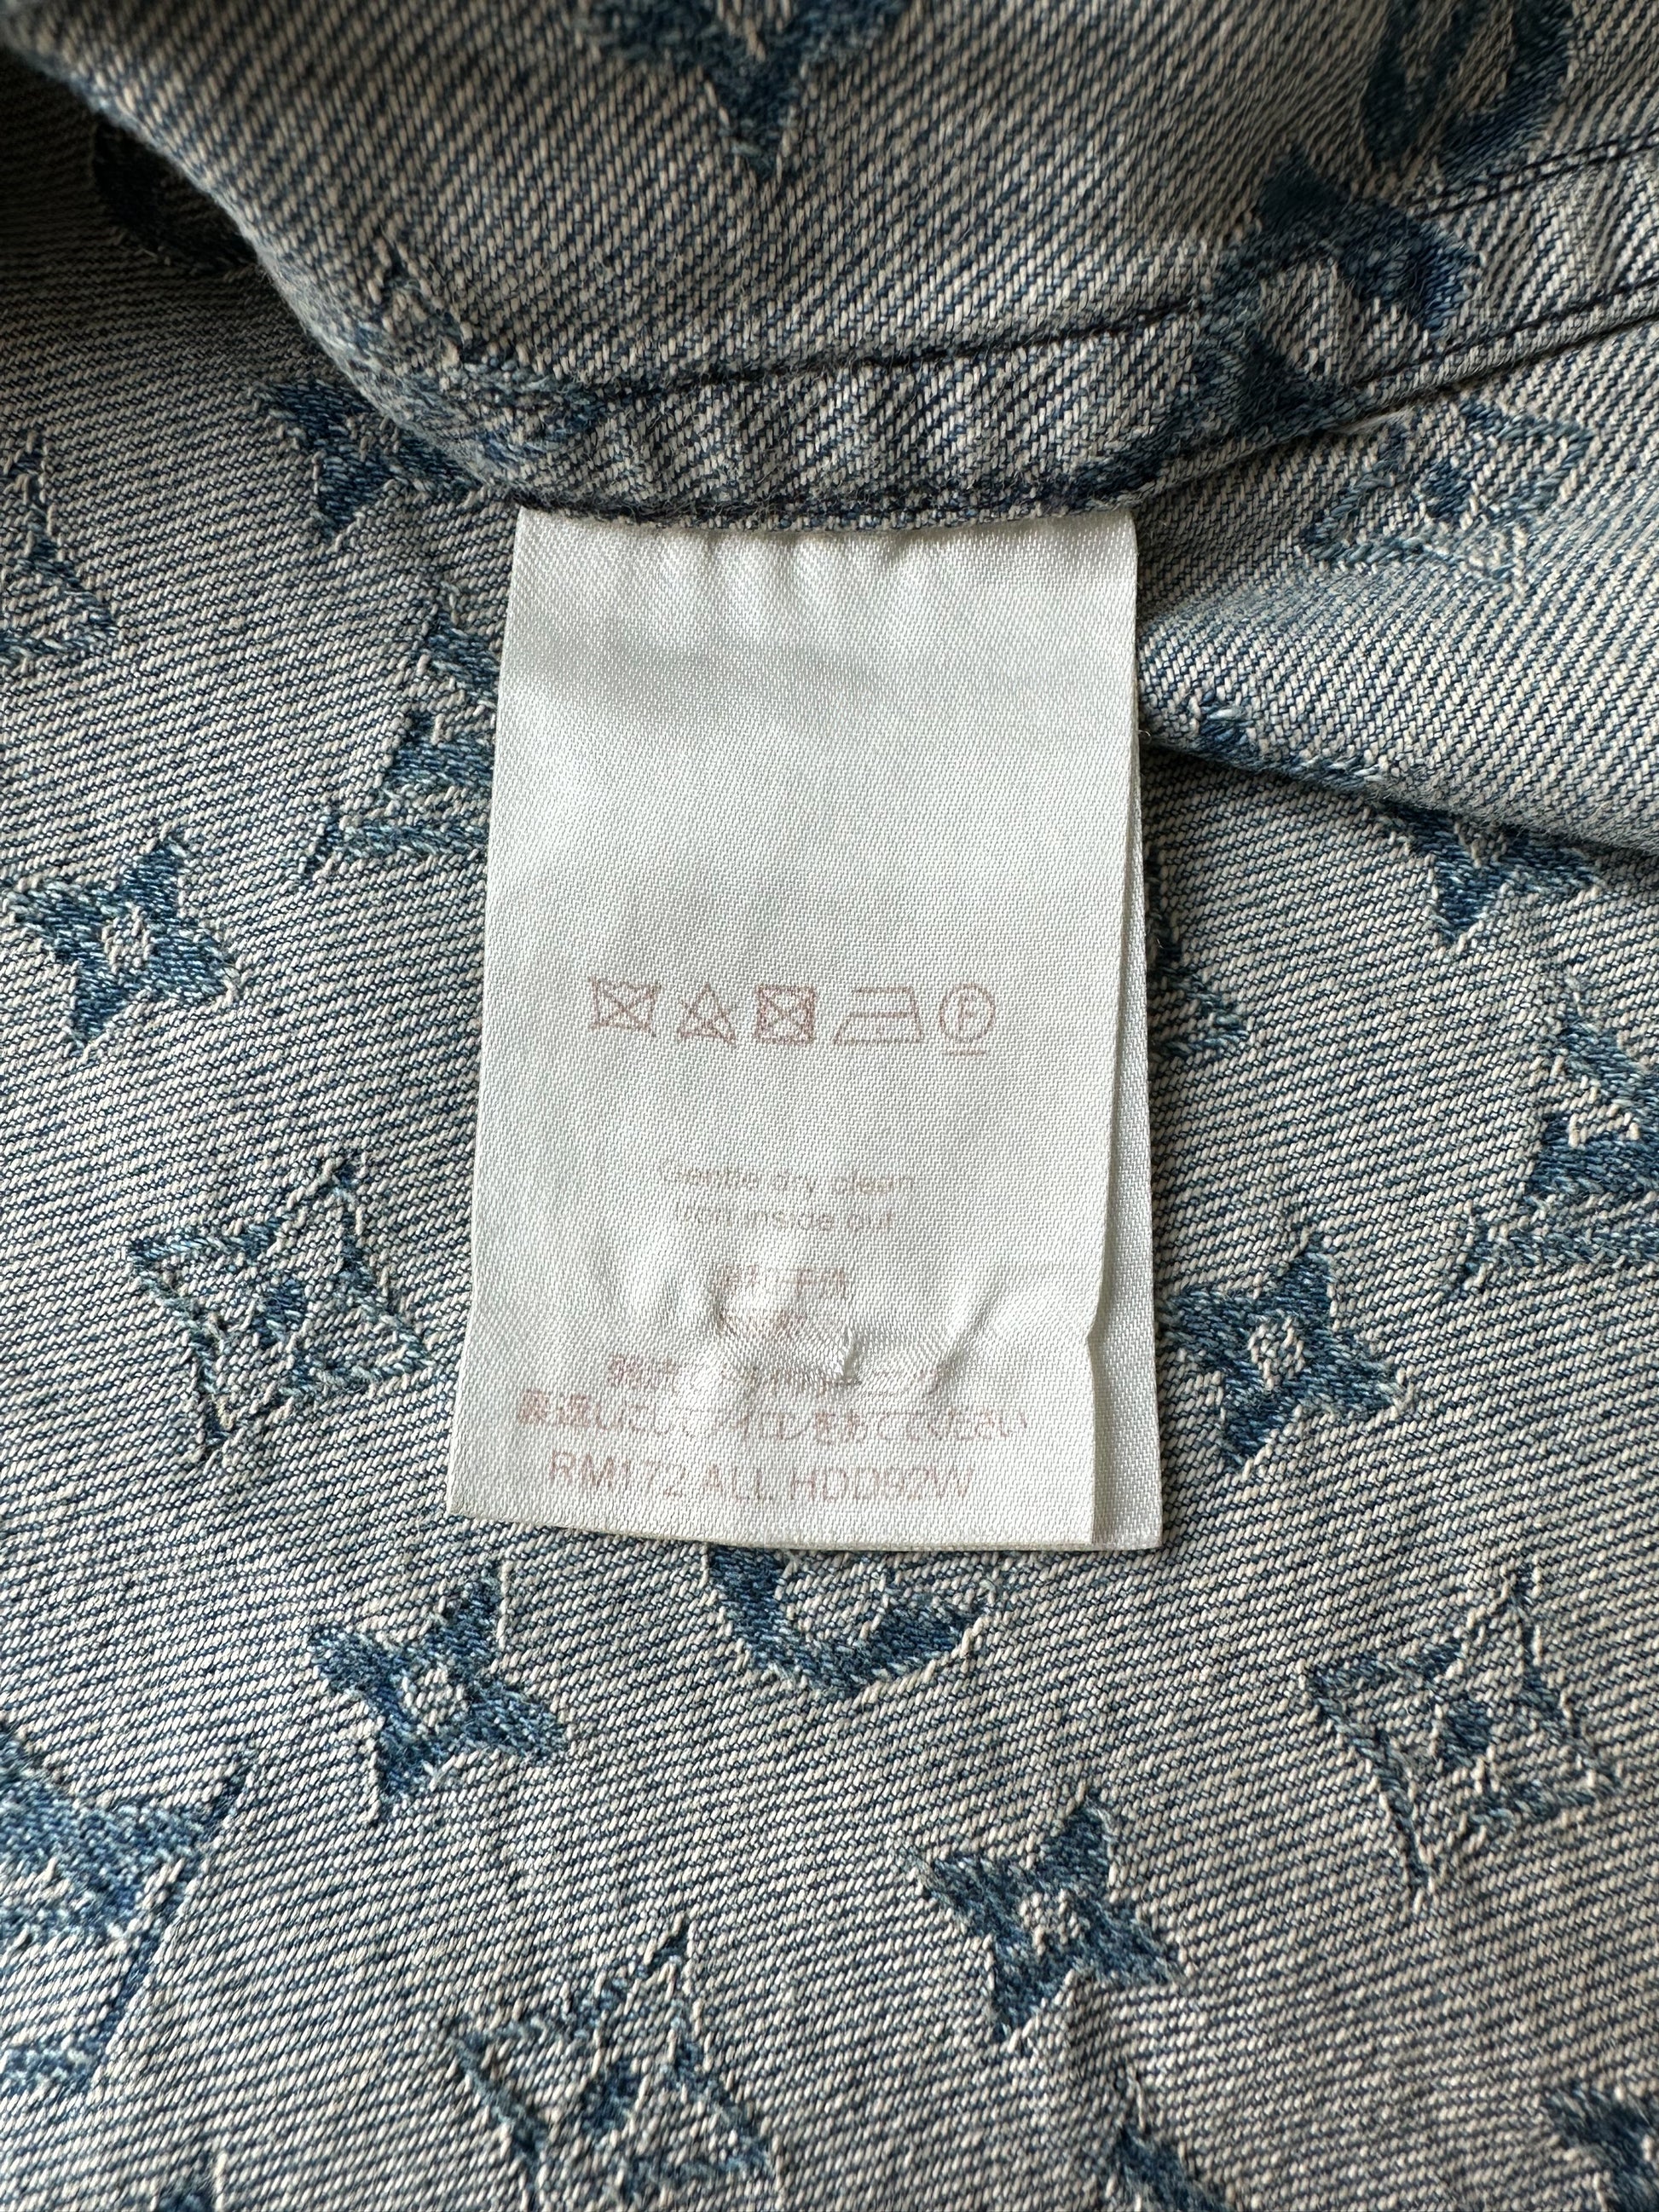 Louis Vuitton Blue Text Pattern Baseball Jersey Clothes Sport For Men Women